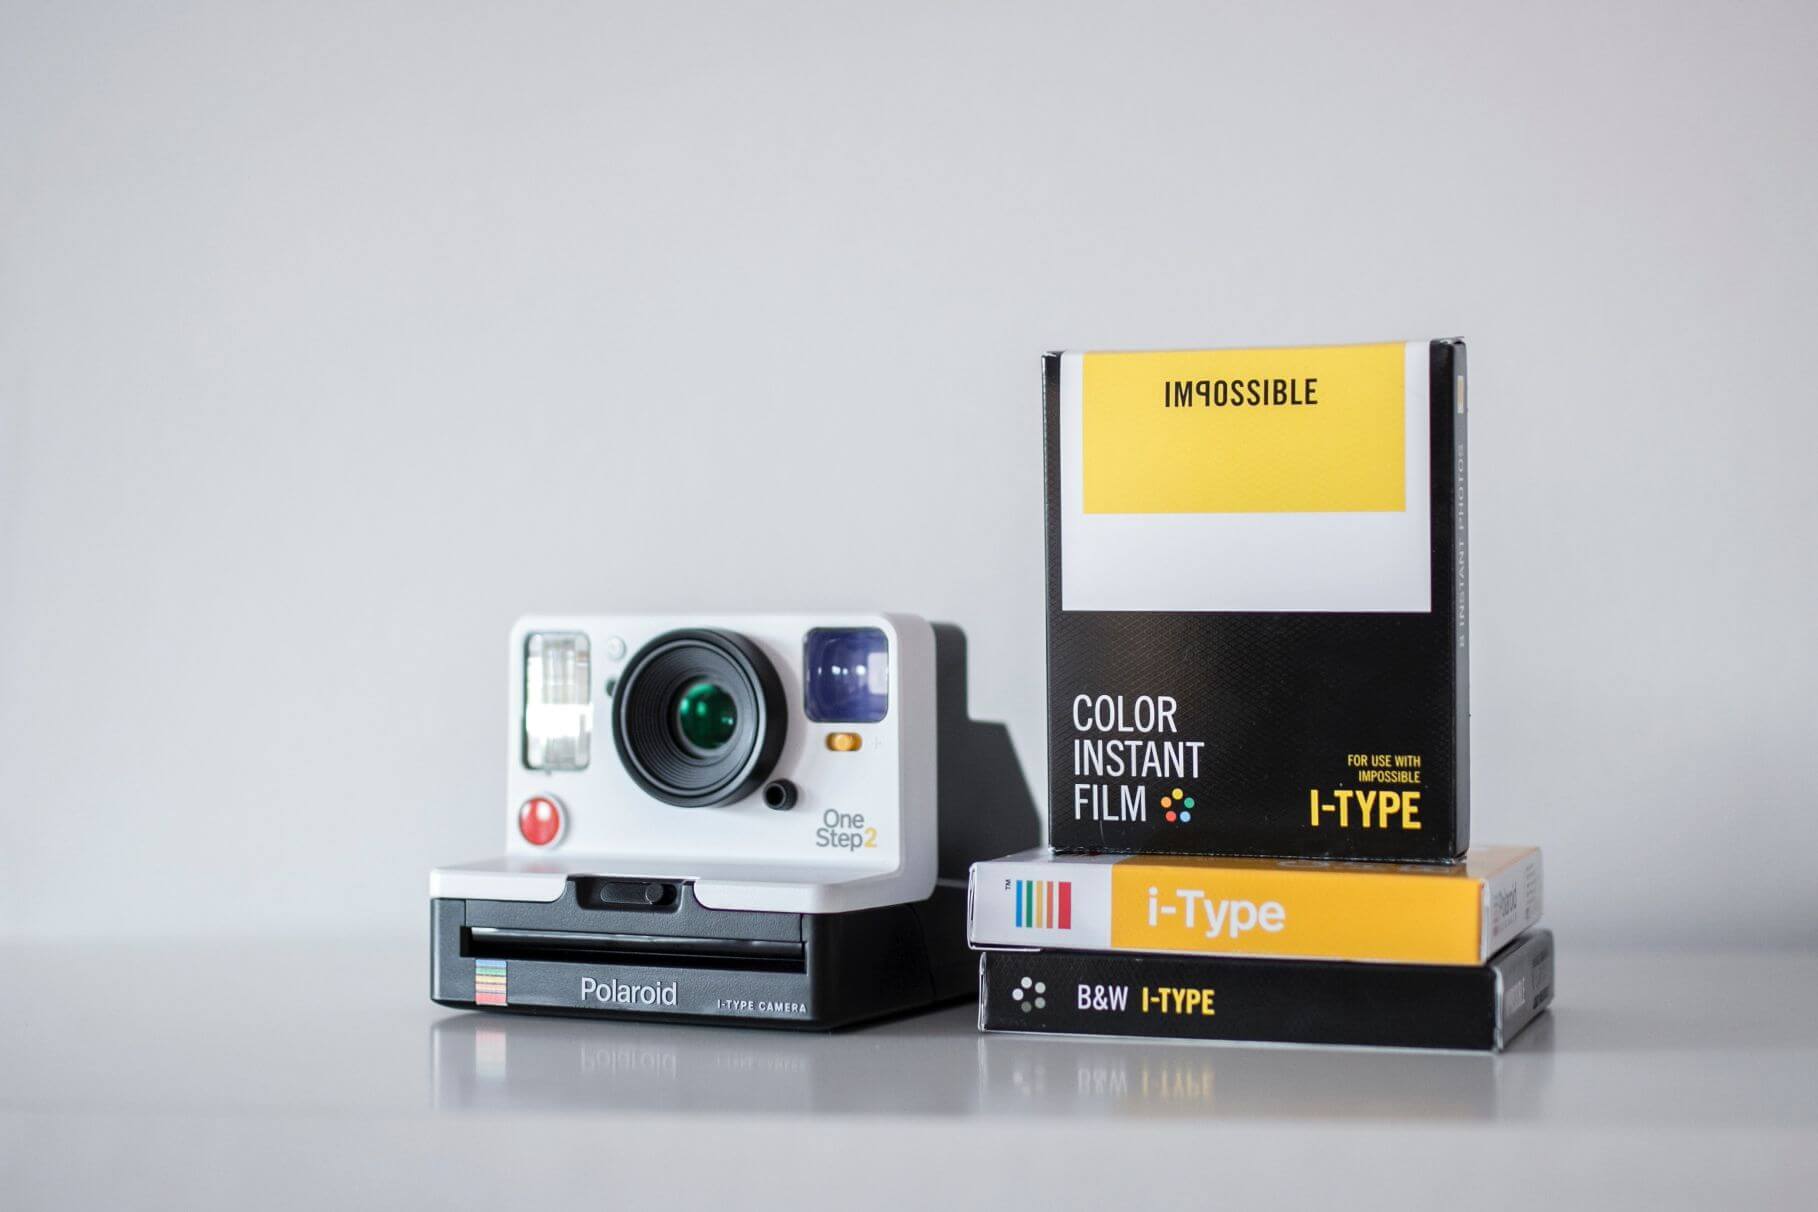 Polaroid 600 White Frame Black & White Instant Film, 8 Exposures — Pro  Photo Supply